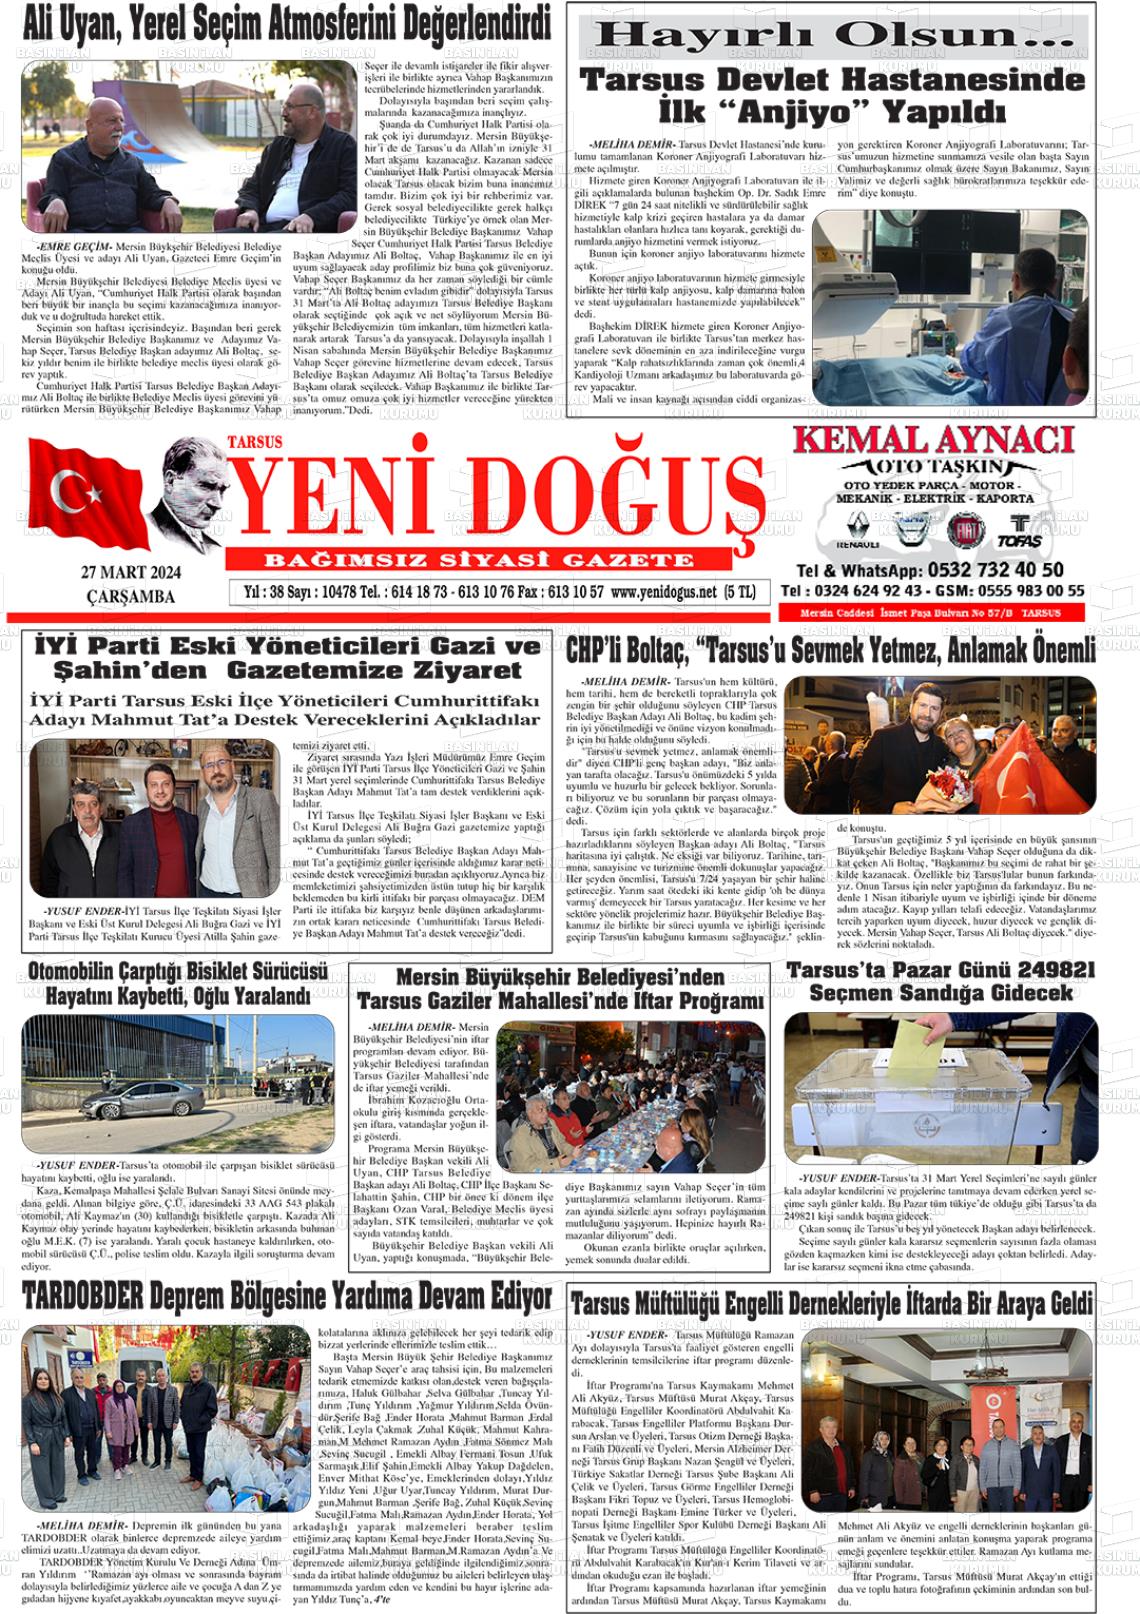 27 Mart 2024 Tarsus Yeni Doğuş Gazete Manşeti